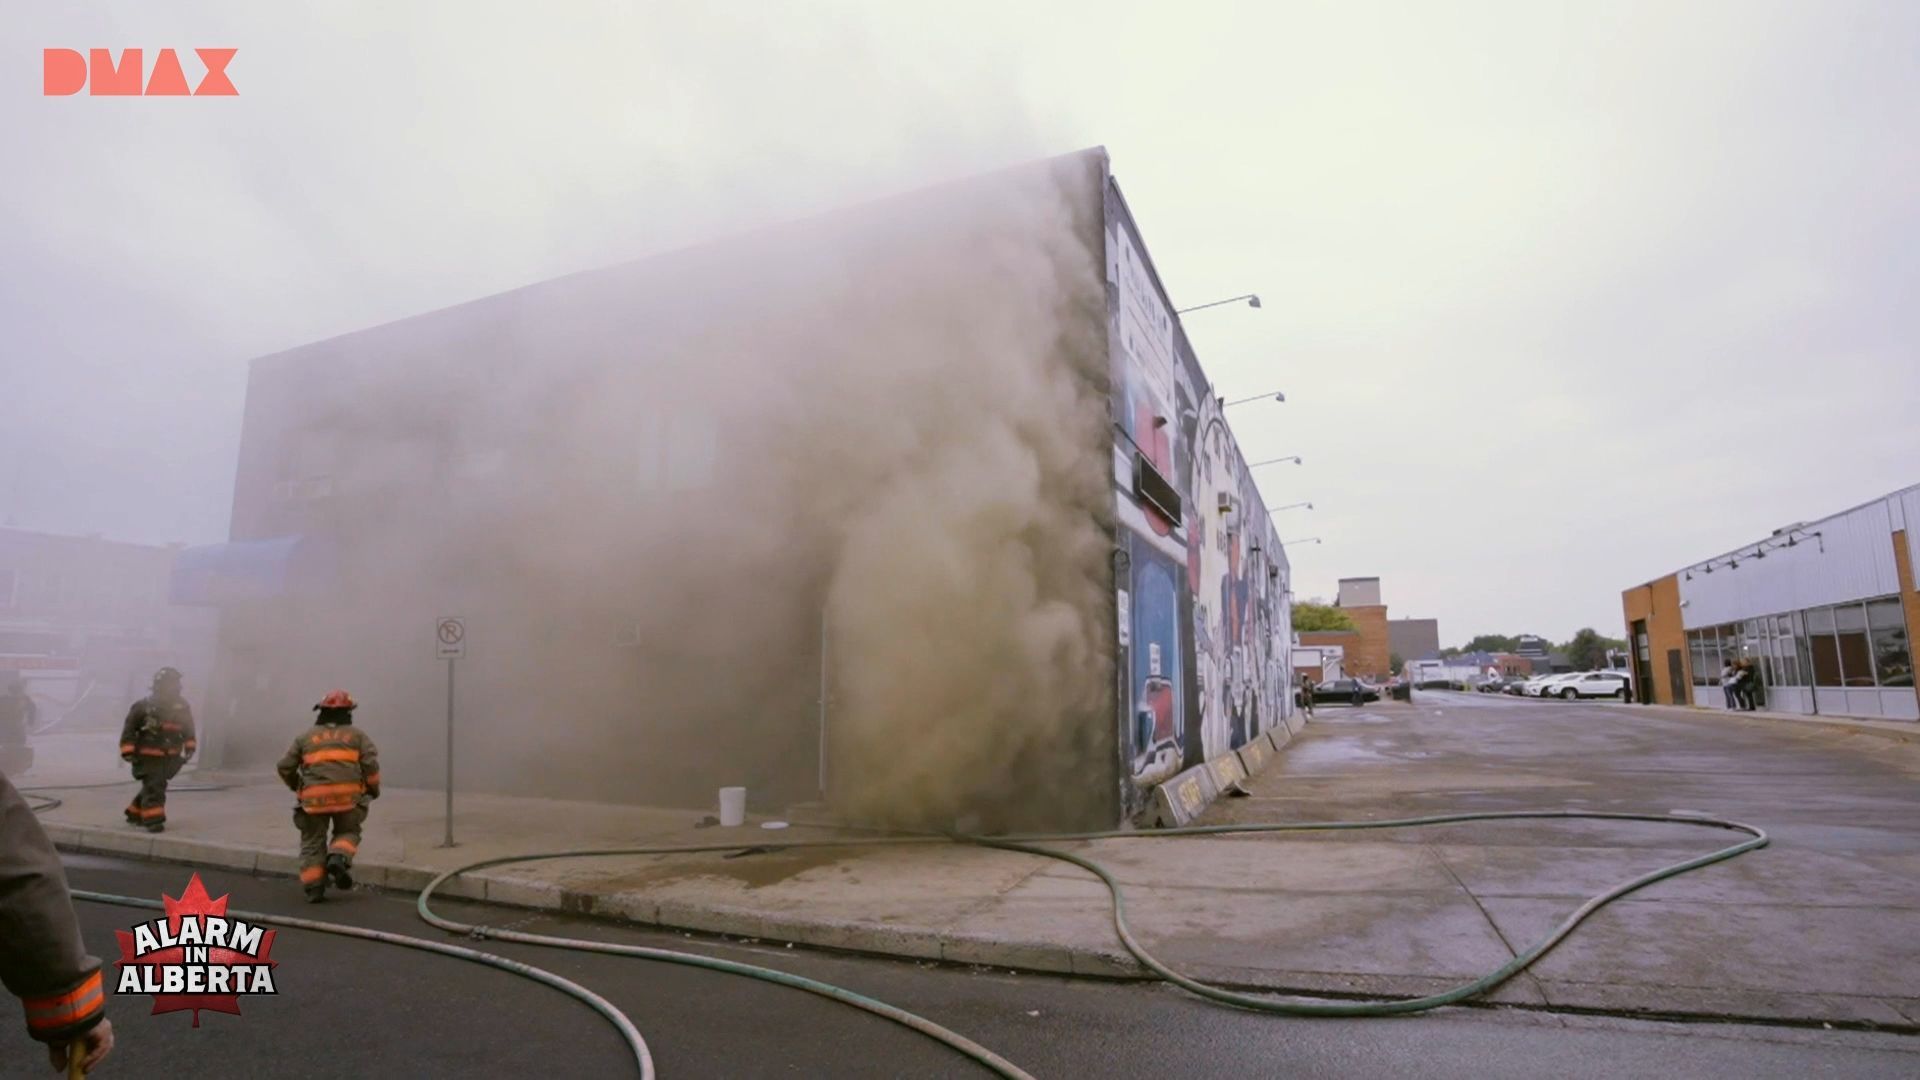 Feuer-Inferno: Stundenlange Löscharbeiten bei einem Großbrand | Alarm in Alberta | DMAX